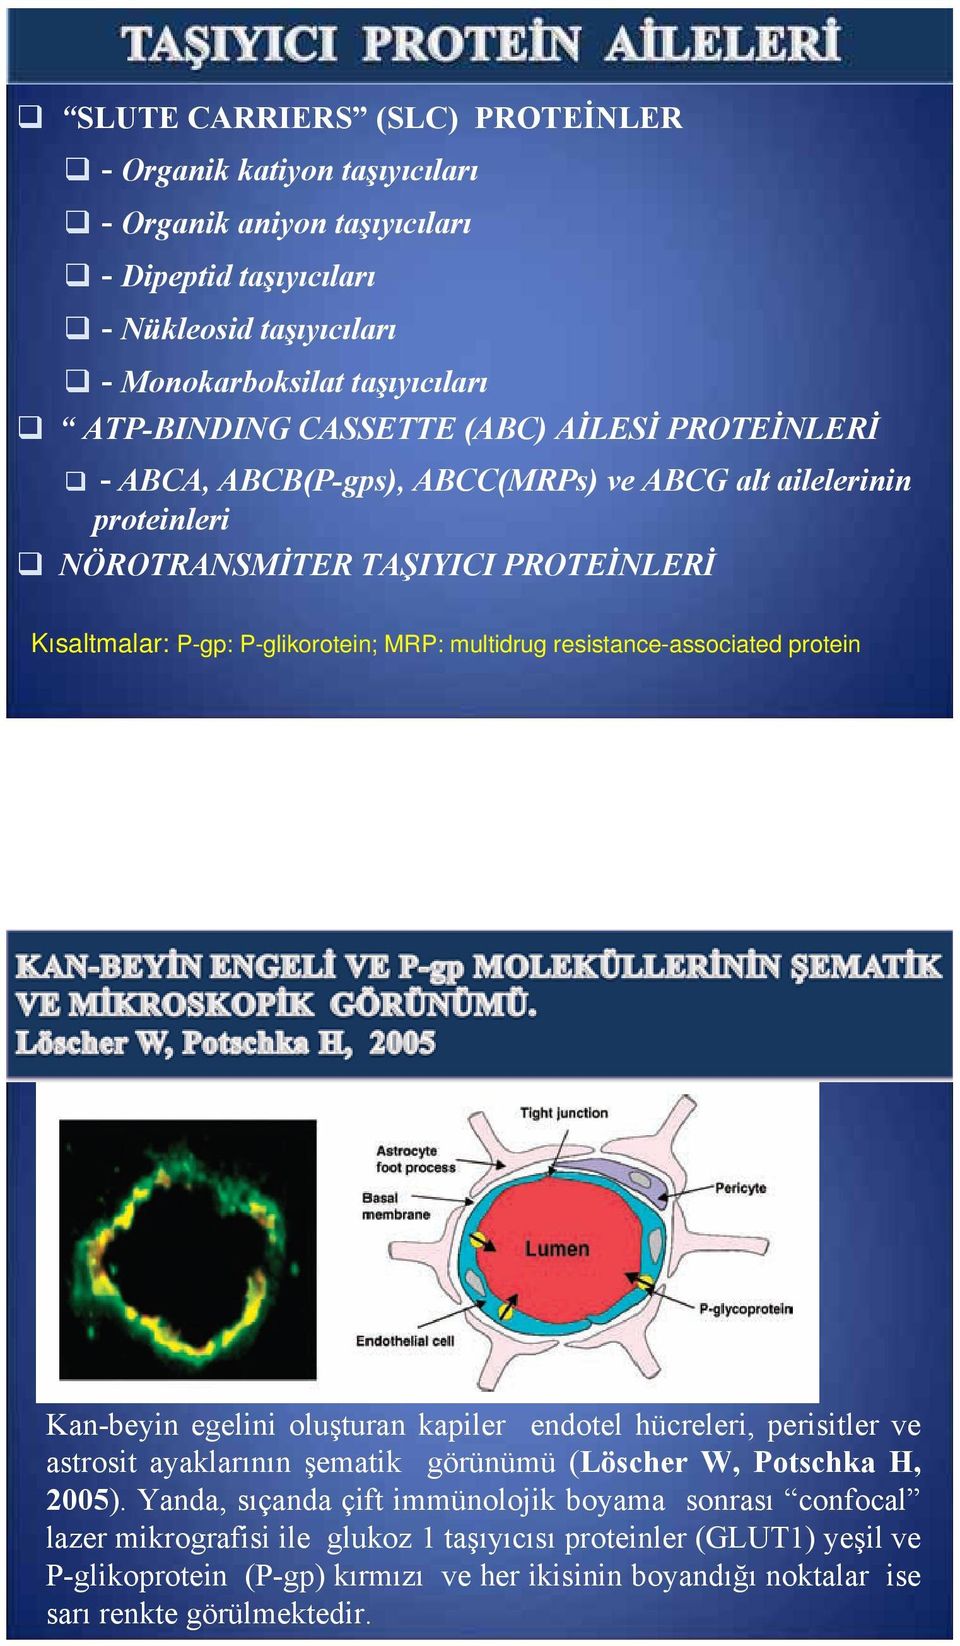 resistance-associated protein Kan-beyin egelini oluşturan kapiler endotel hücreleri, perisitler ve astrosit ayaklarının şematik görünümü (Löscher W, Potschka H, 2005).